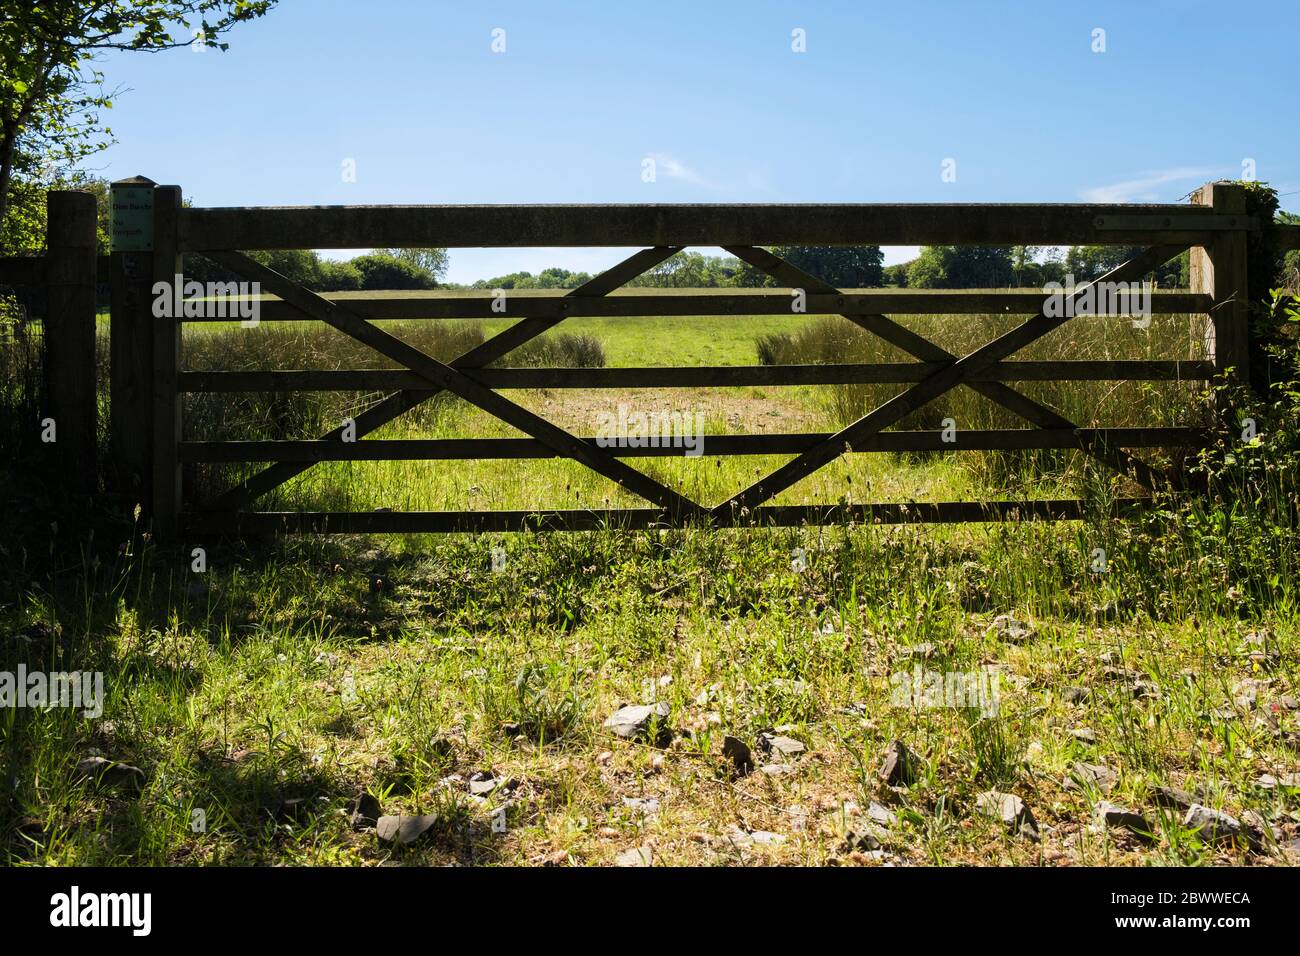 Ferme porte dans le champ herbacé dans la campagne. Anglesey, pays de Galles, Royaume-Uni, Grande-Bretagne Banque D'Images